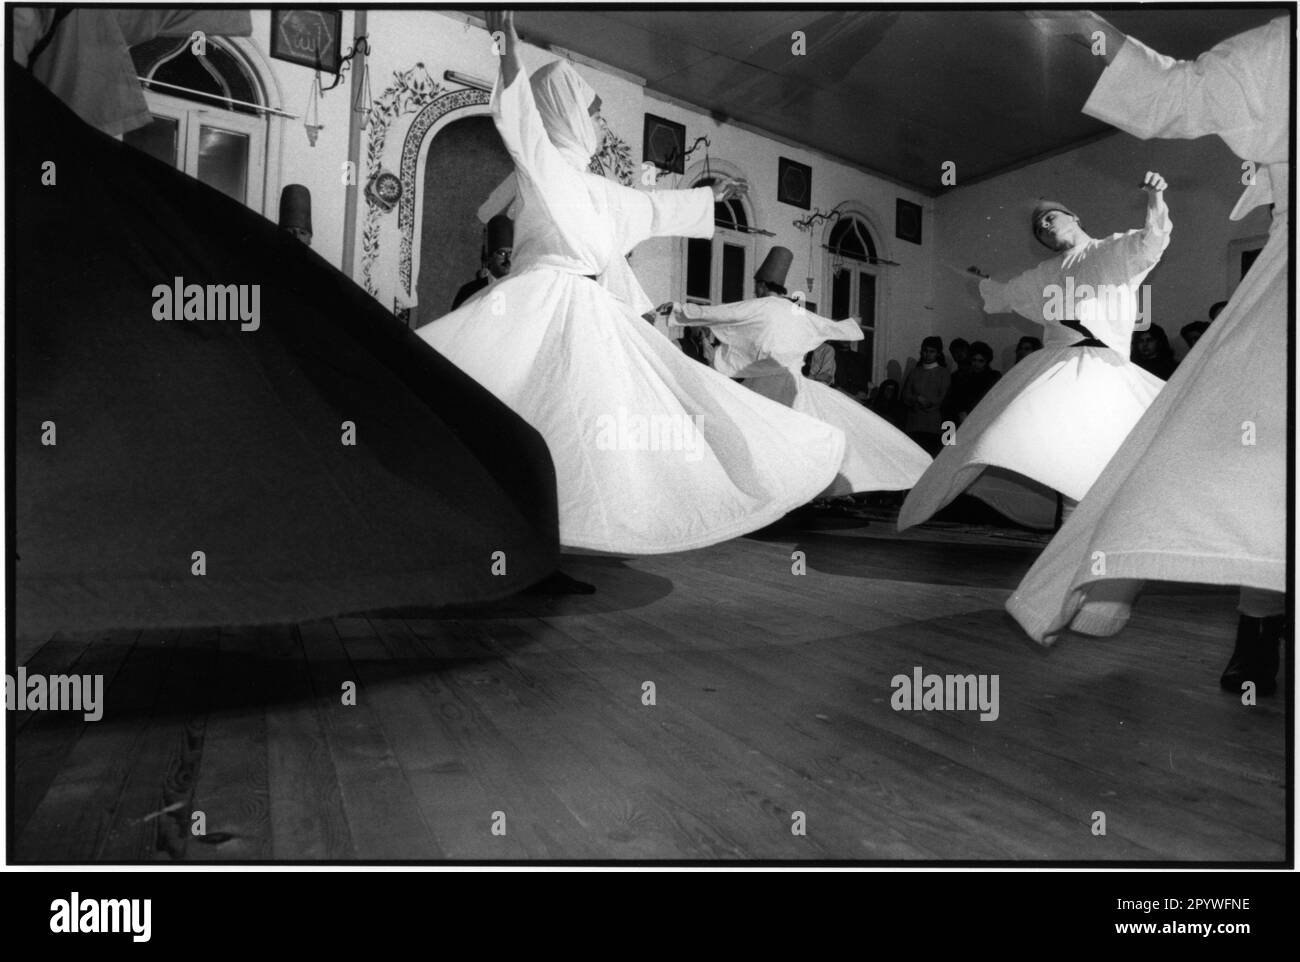 Religions : Islam. Derviches tourbillonnantes à l'école dervique d'Üsküdar à Istanbul. Noir et blanc. Photo, 1994. Banque D'Images